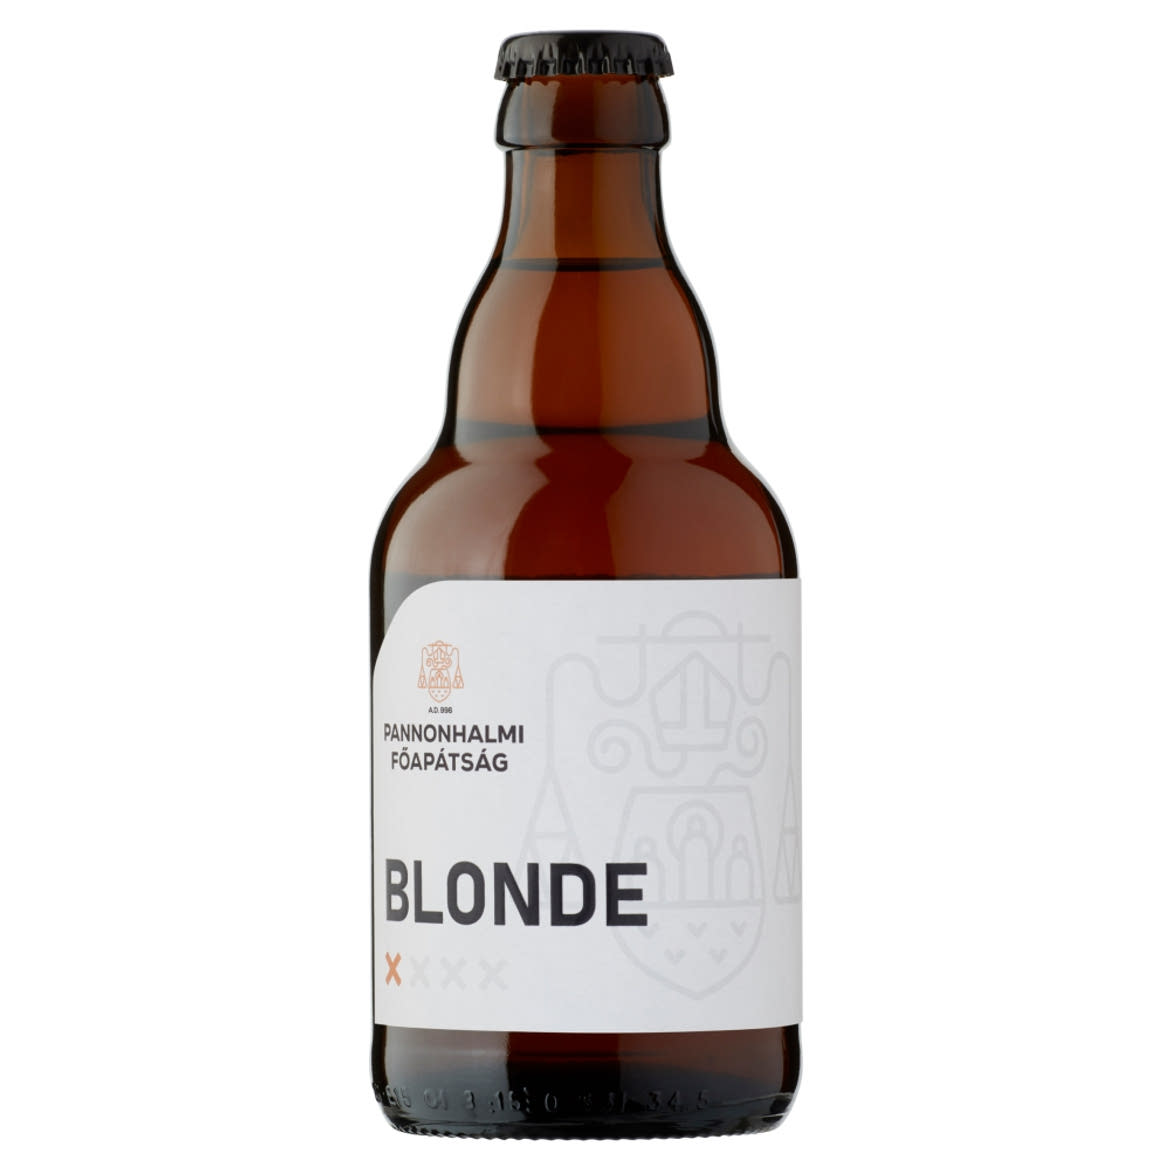 Pannonhalmi Főapátság Blonde belga típusú, apátsági, szűretlen világos sör 5%